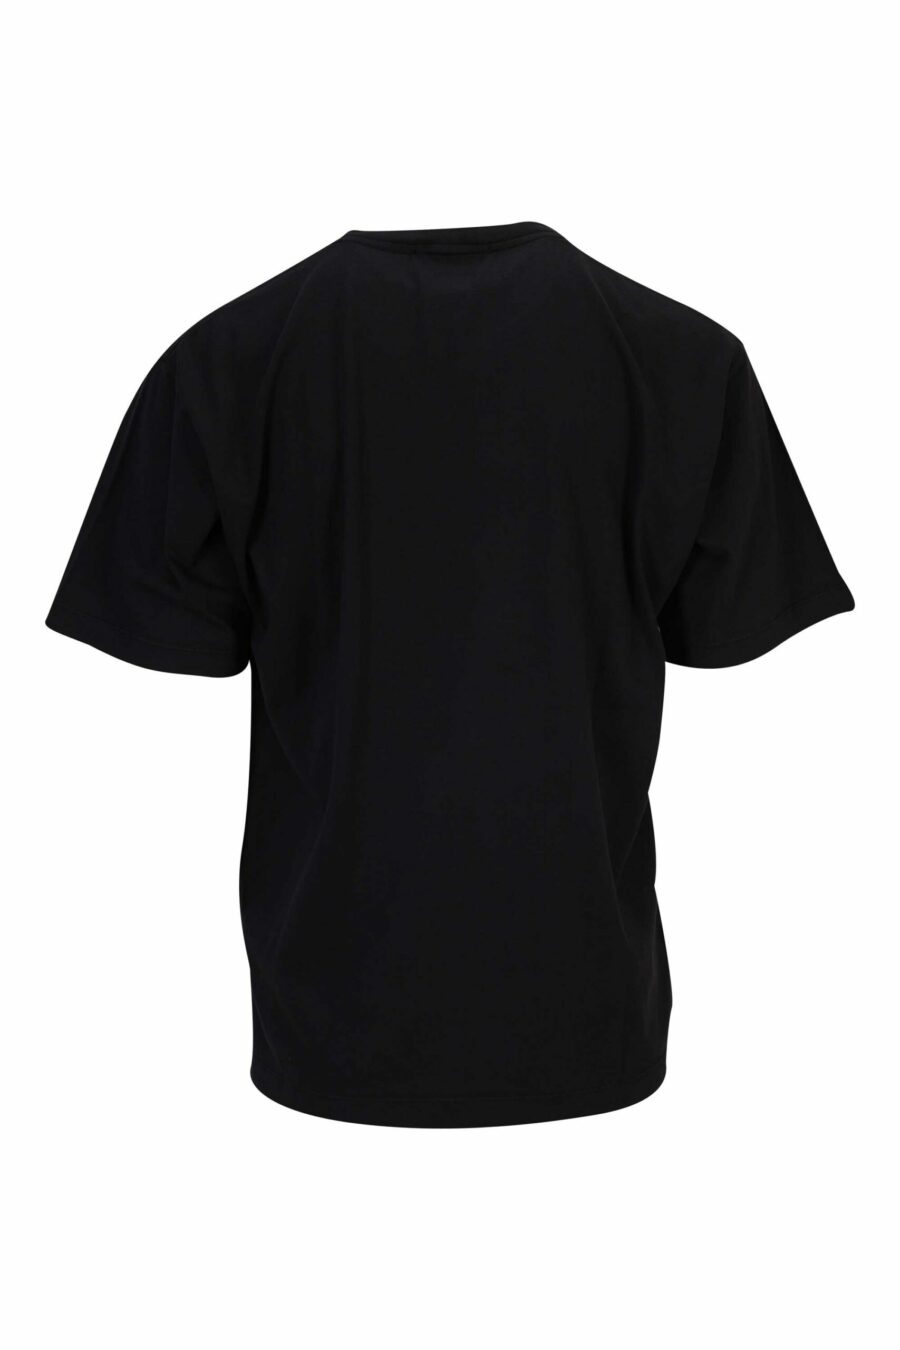 T-shirt noir avec boussole maxilogo - 8052572907272 1 scaled